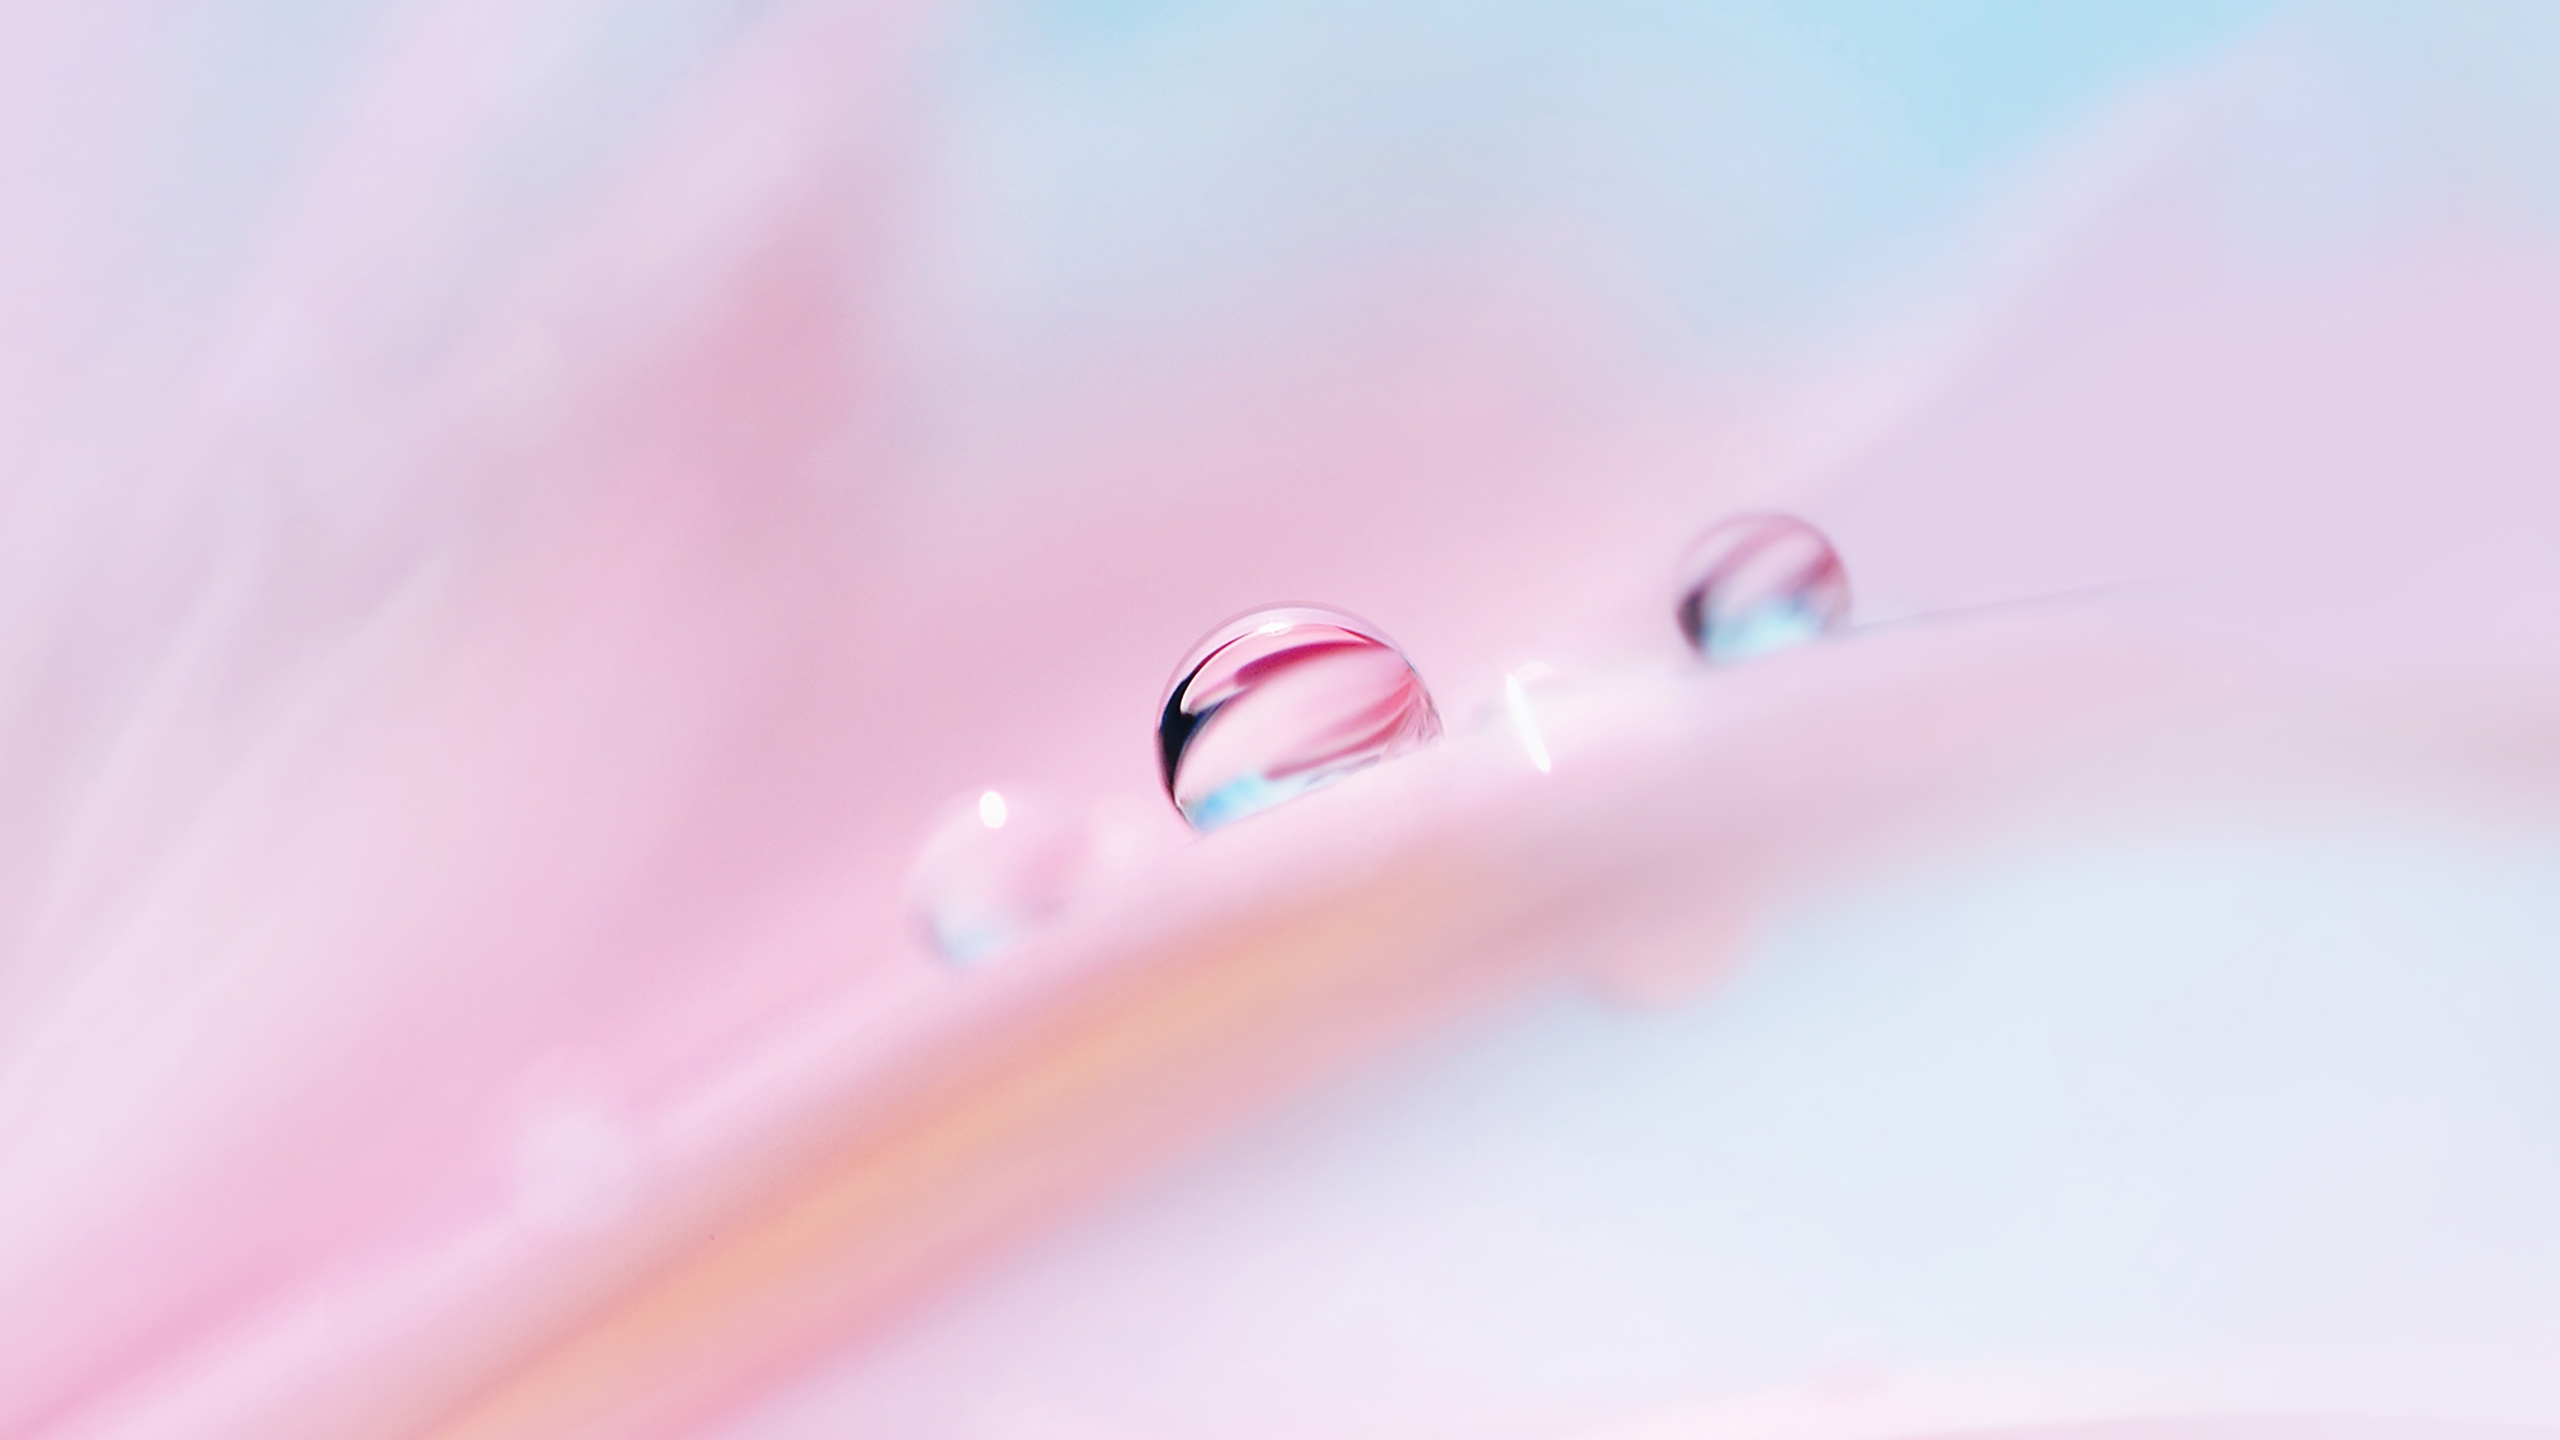 Бесплатное фото Капельки дождя на нежно-розовых лепестках